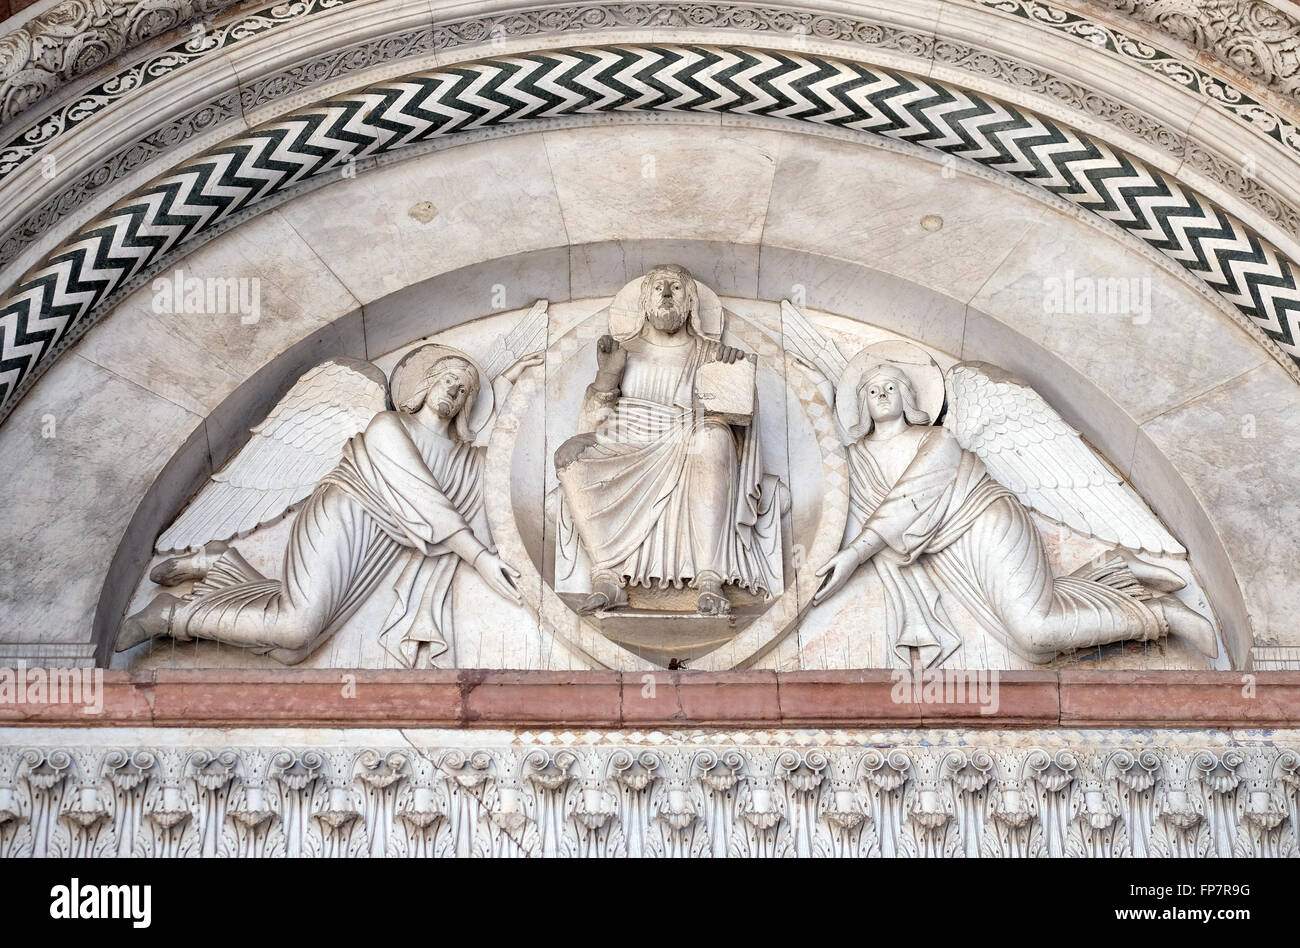 Das zentrale Portal der Kathedrale von St. Martin in Lucca. Lünette zeigt den Erlöser von zwei Engeln, Lucca, Italien Stockfoto